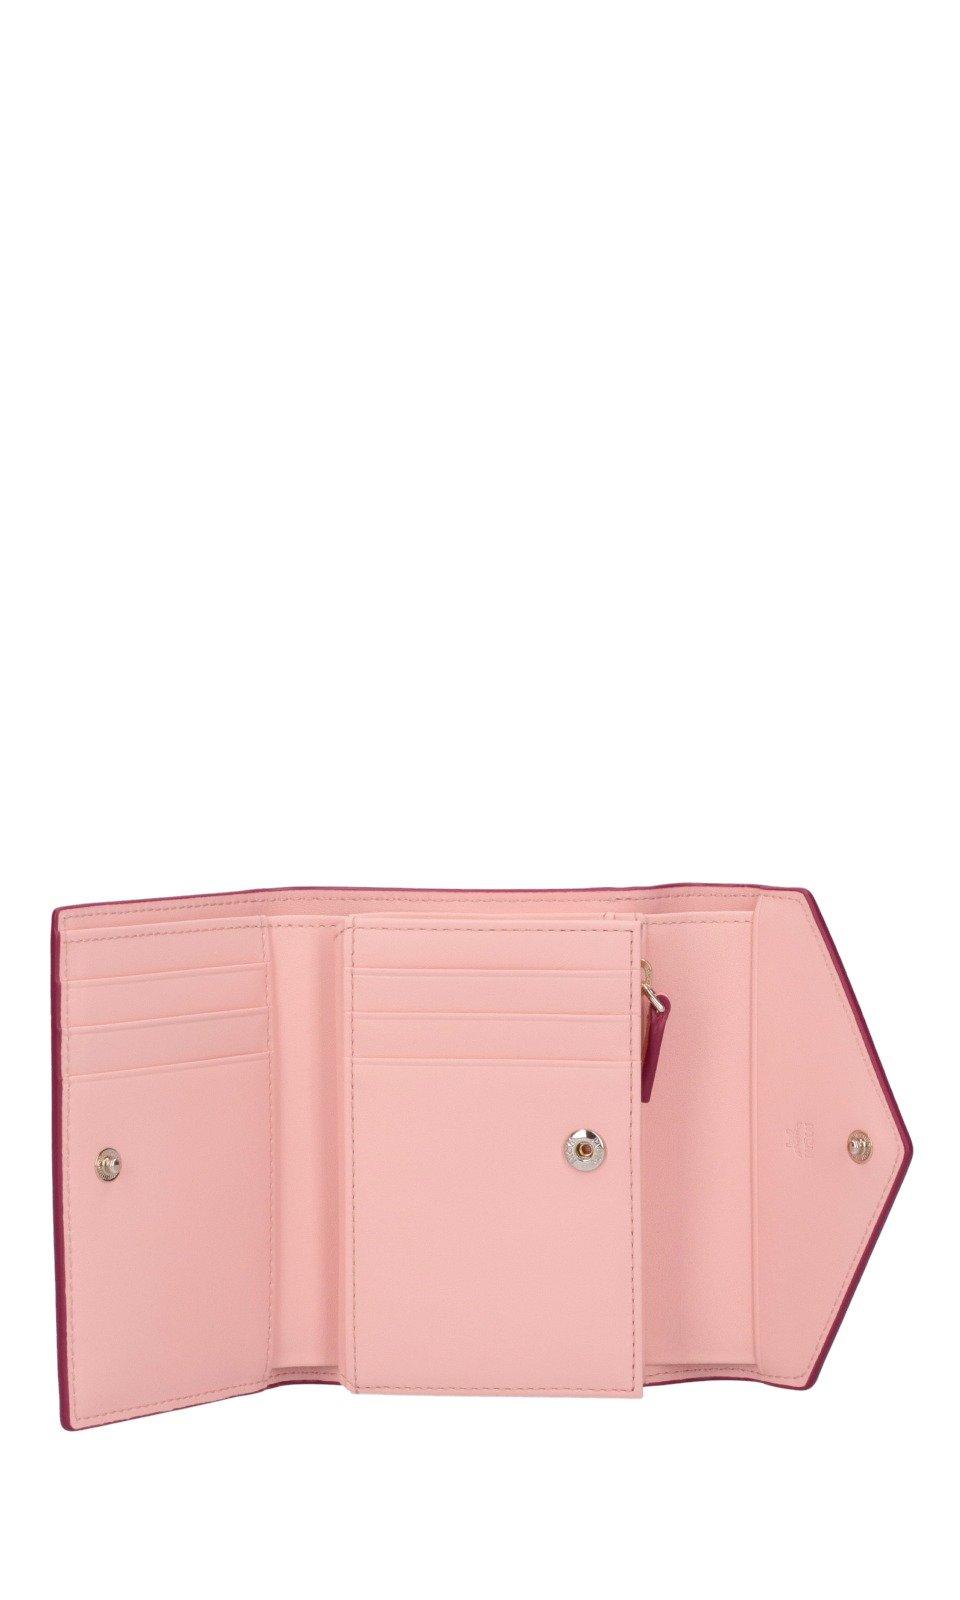 Louis Vuitton Monogram Multicolor Tri-Fold Wallet Purse Pink Leather Women  #338D